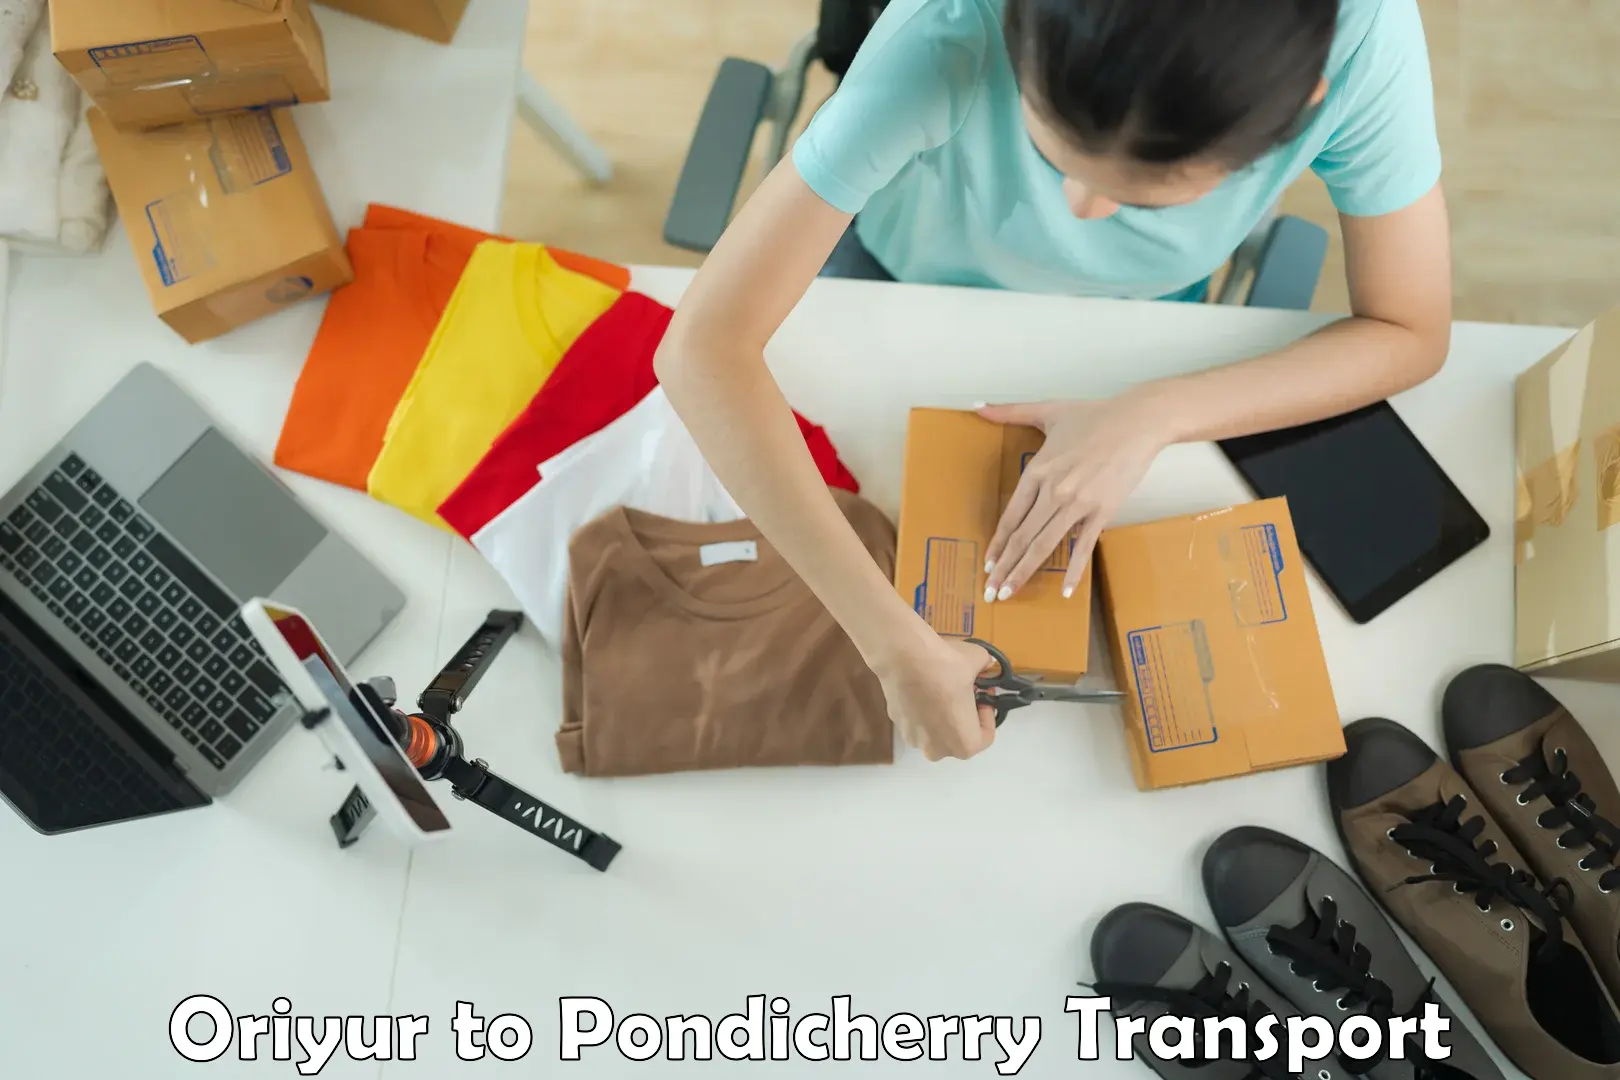 Online transport service Oriyur to Pondicherry